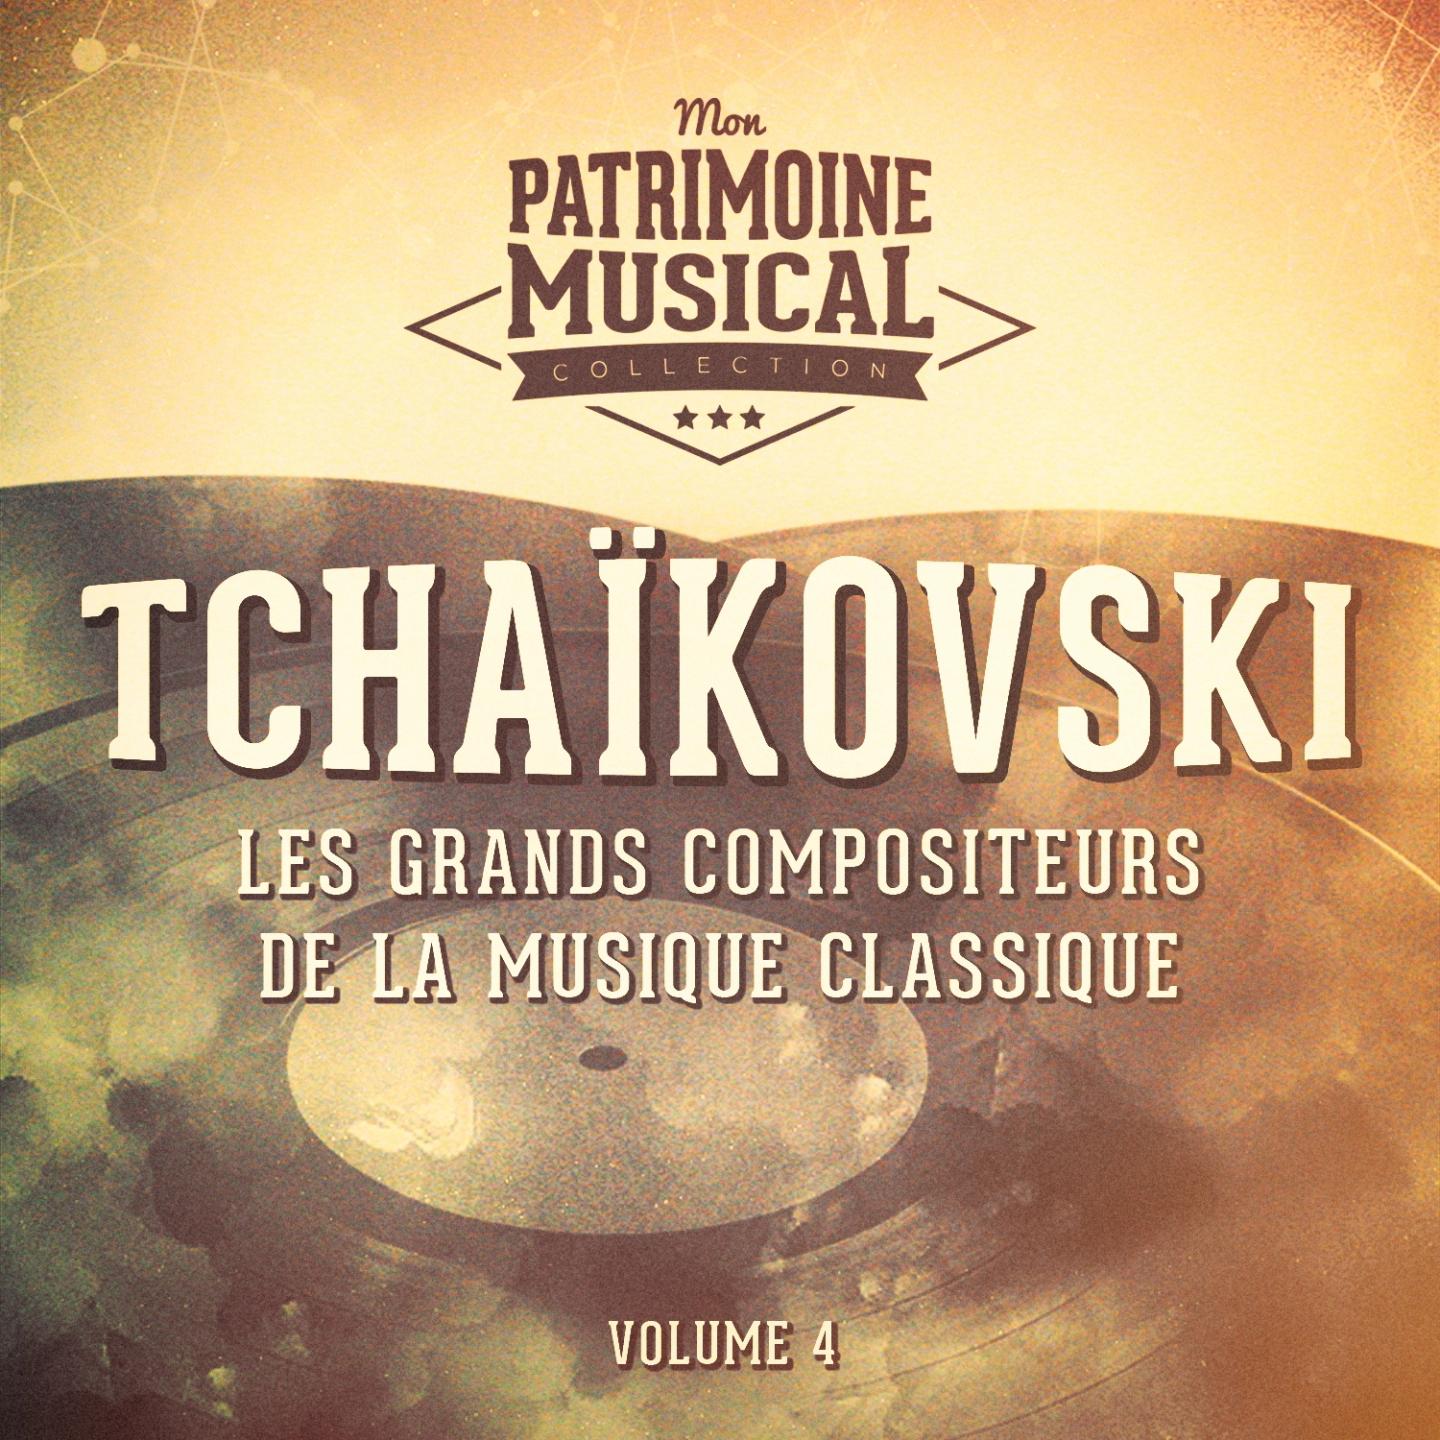 Les grands compositeurs de la musique classique : piotr ilitch tcha kovski, vol. 4